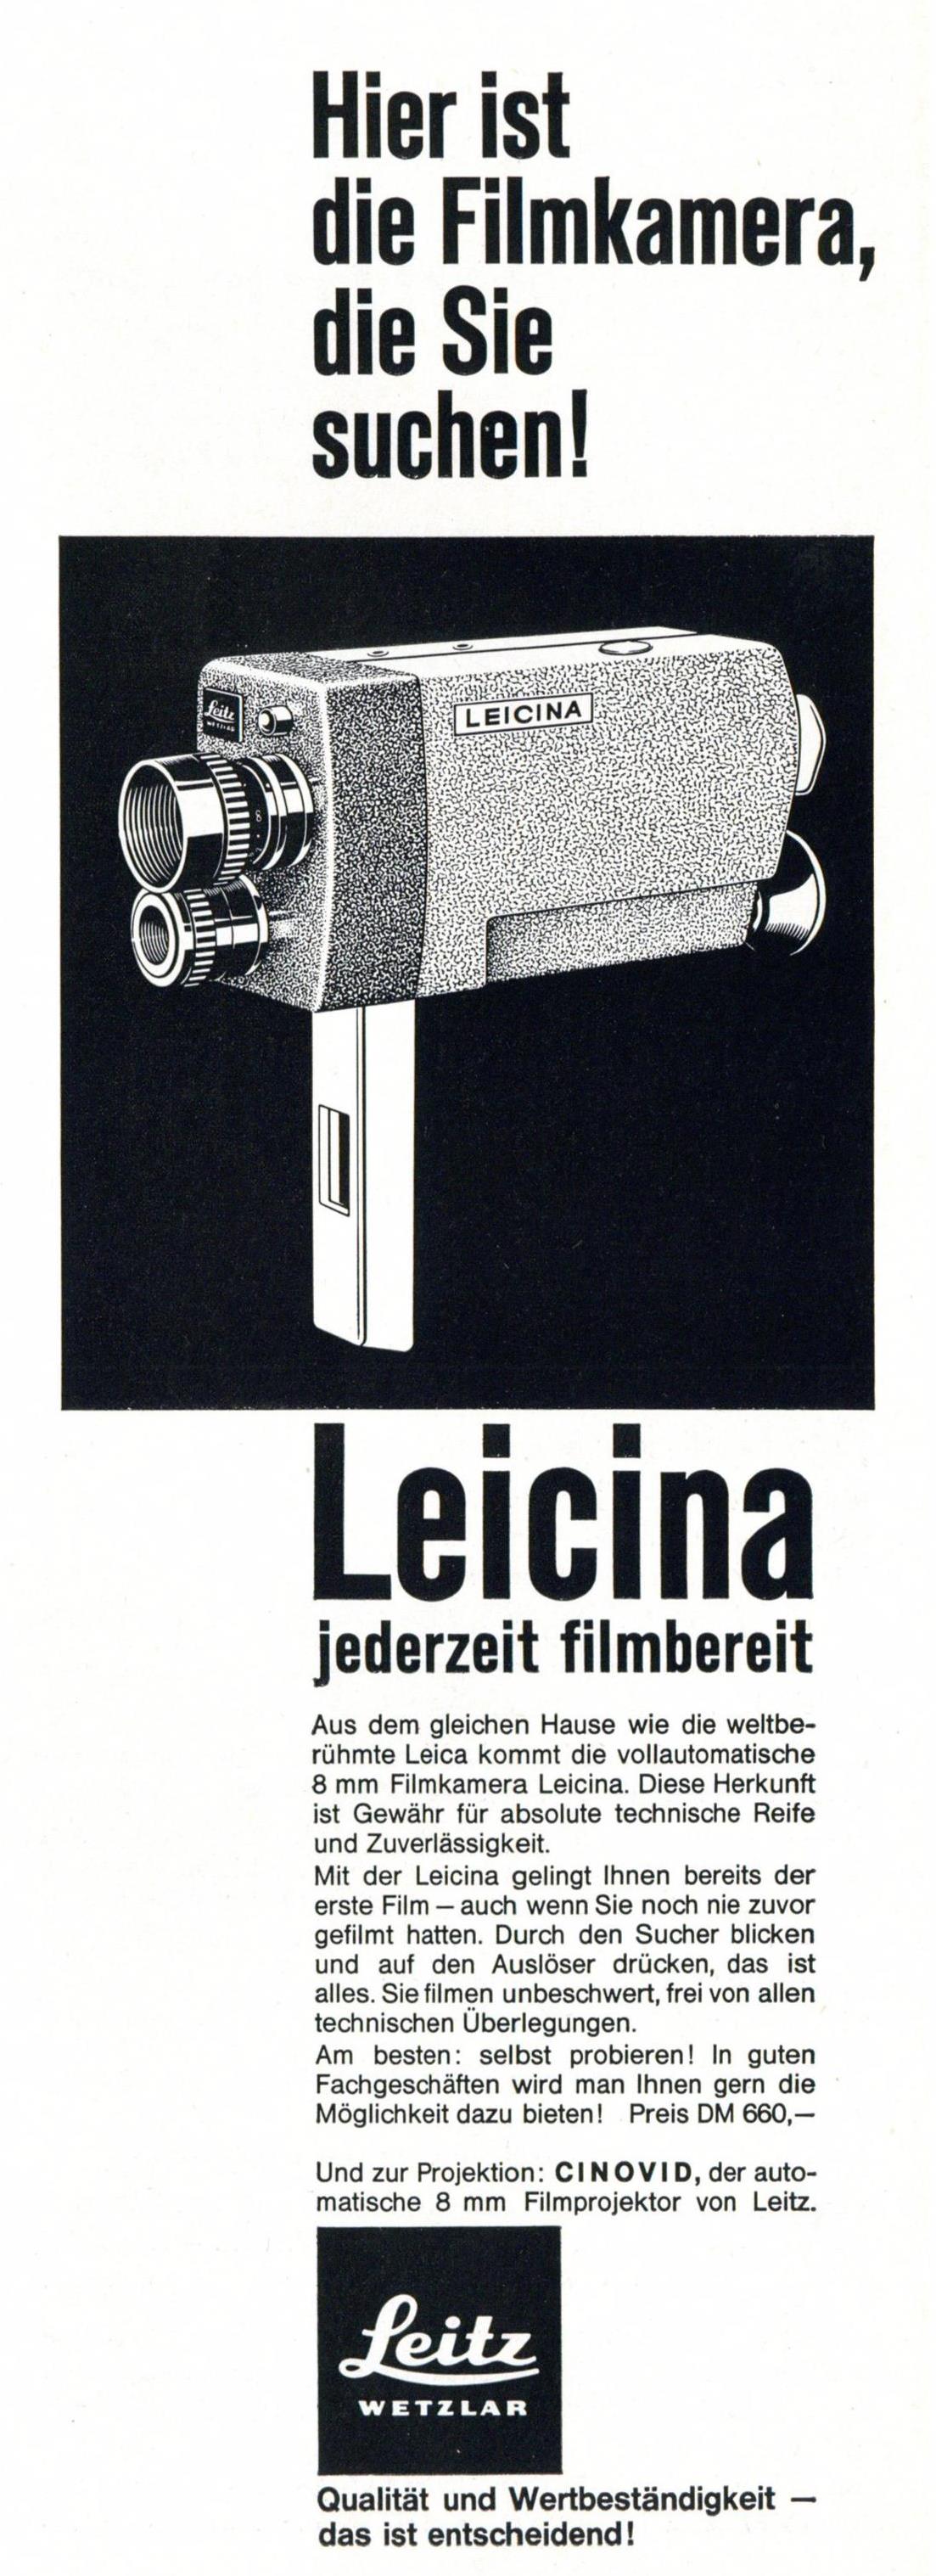 Leitz 1960 0.jpg